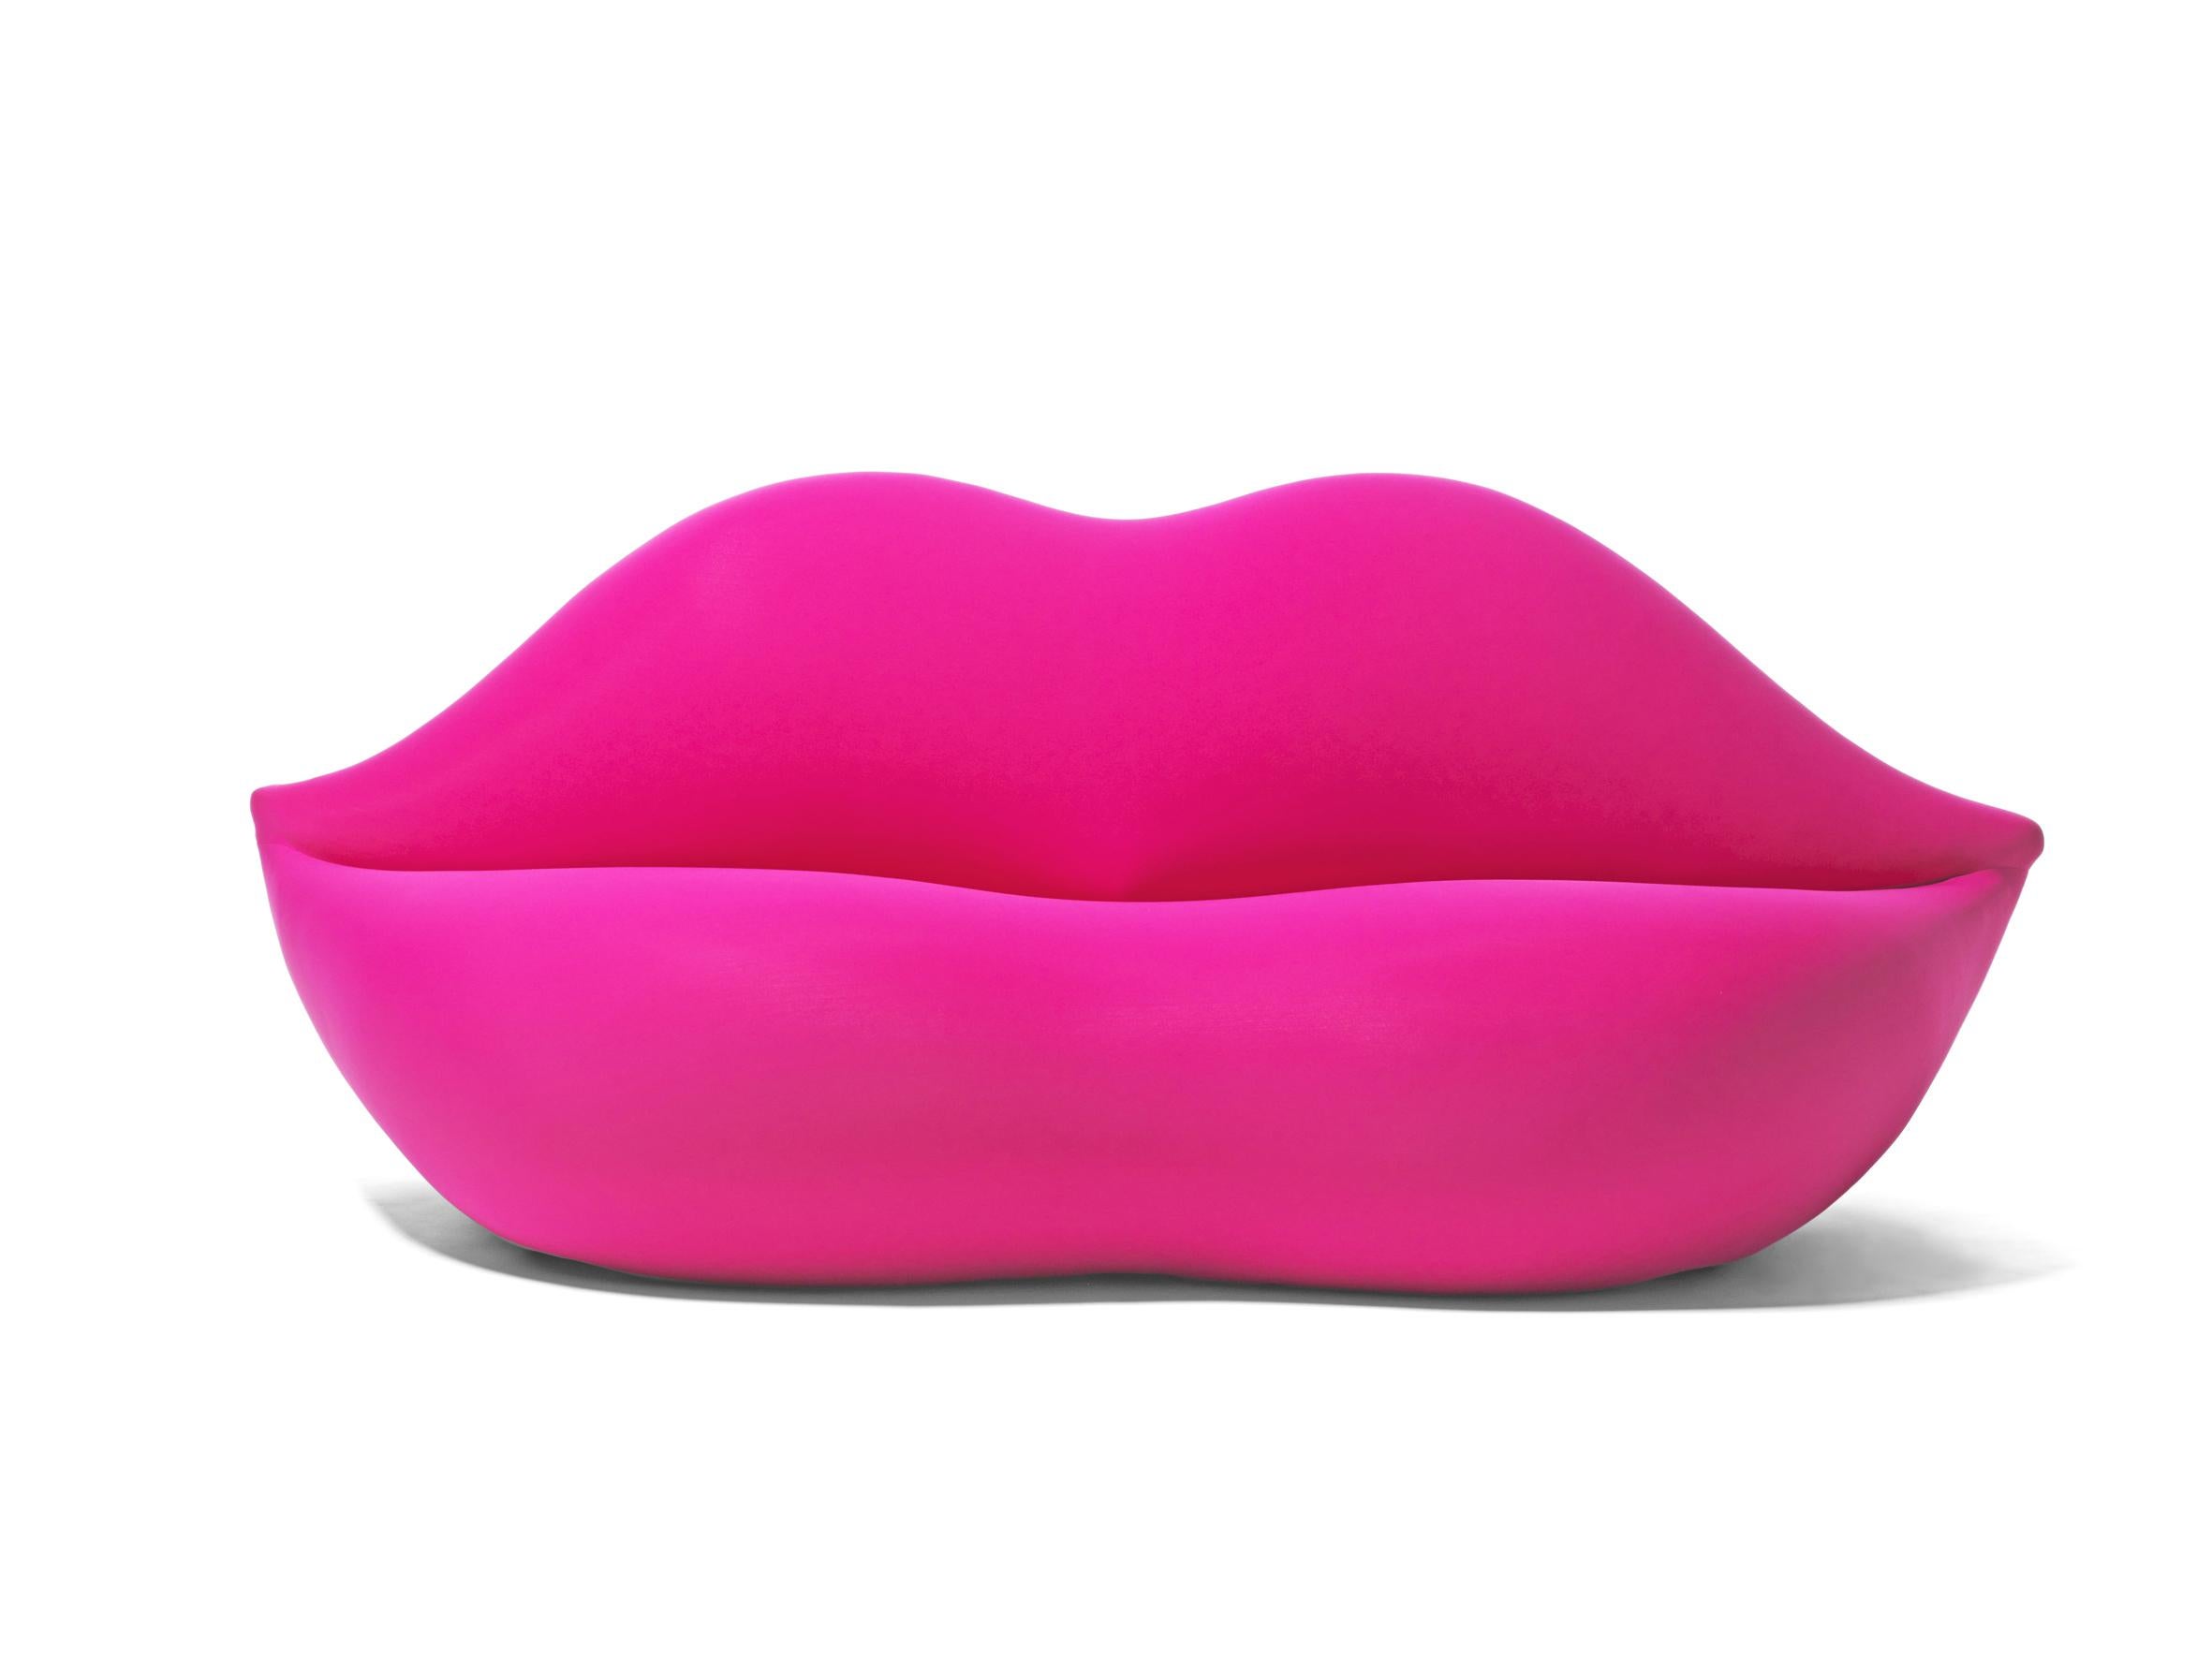 Bocca, le canapé original de 1970 en forme de lèvres, n'appartient qu'à Gufram. Ce canapé sensuel, idéal pour un tête-à-tête, est entré dans l'imaginaire collectif au même titre que les œuvres d'Andy Warhol, ainsi que d'autres chefs-d'œuvre du pop